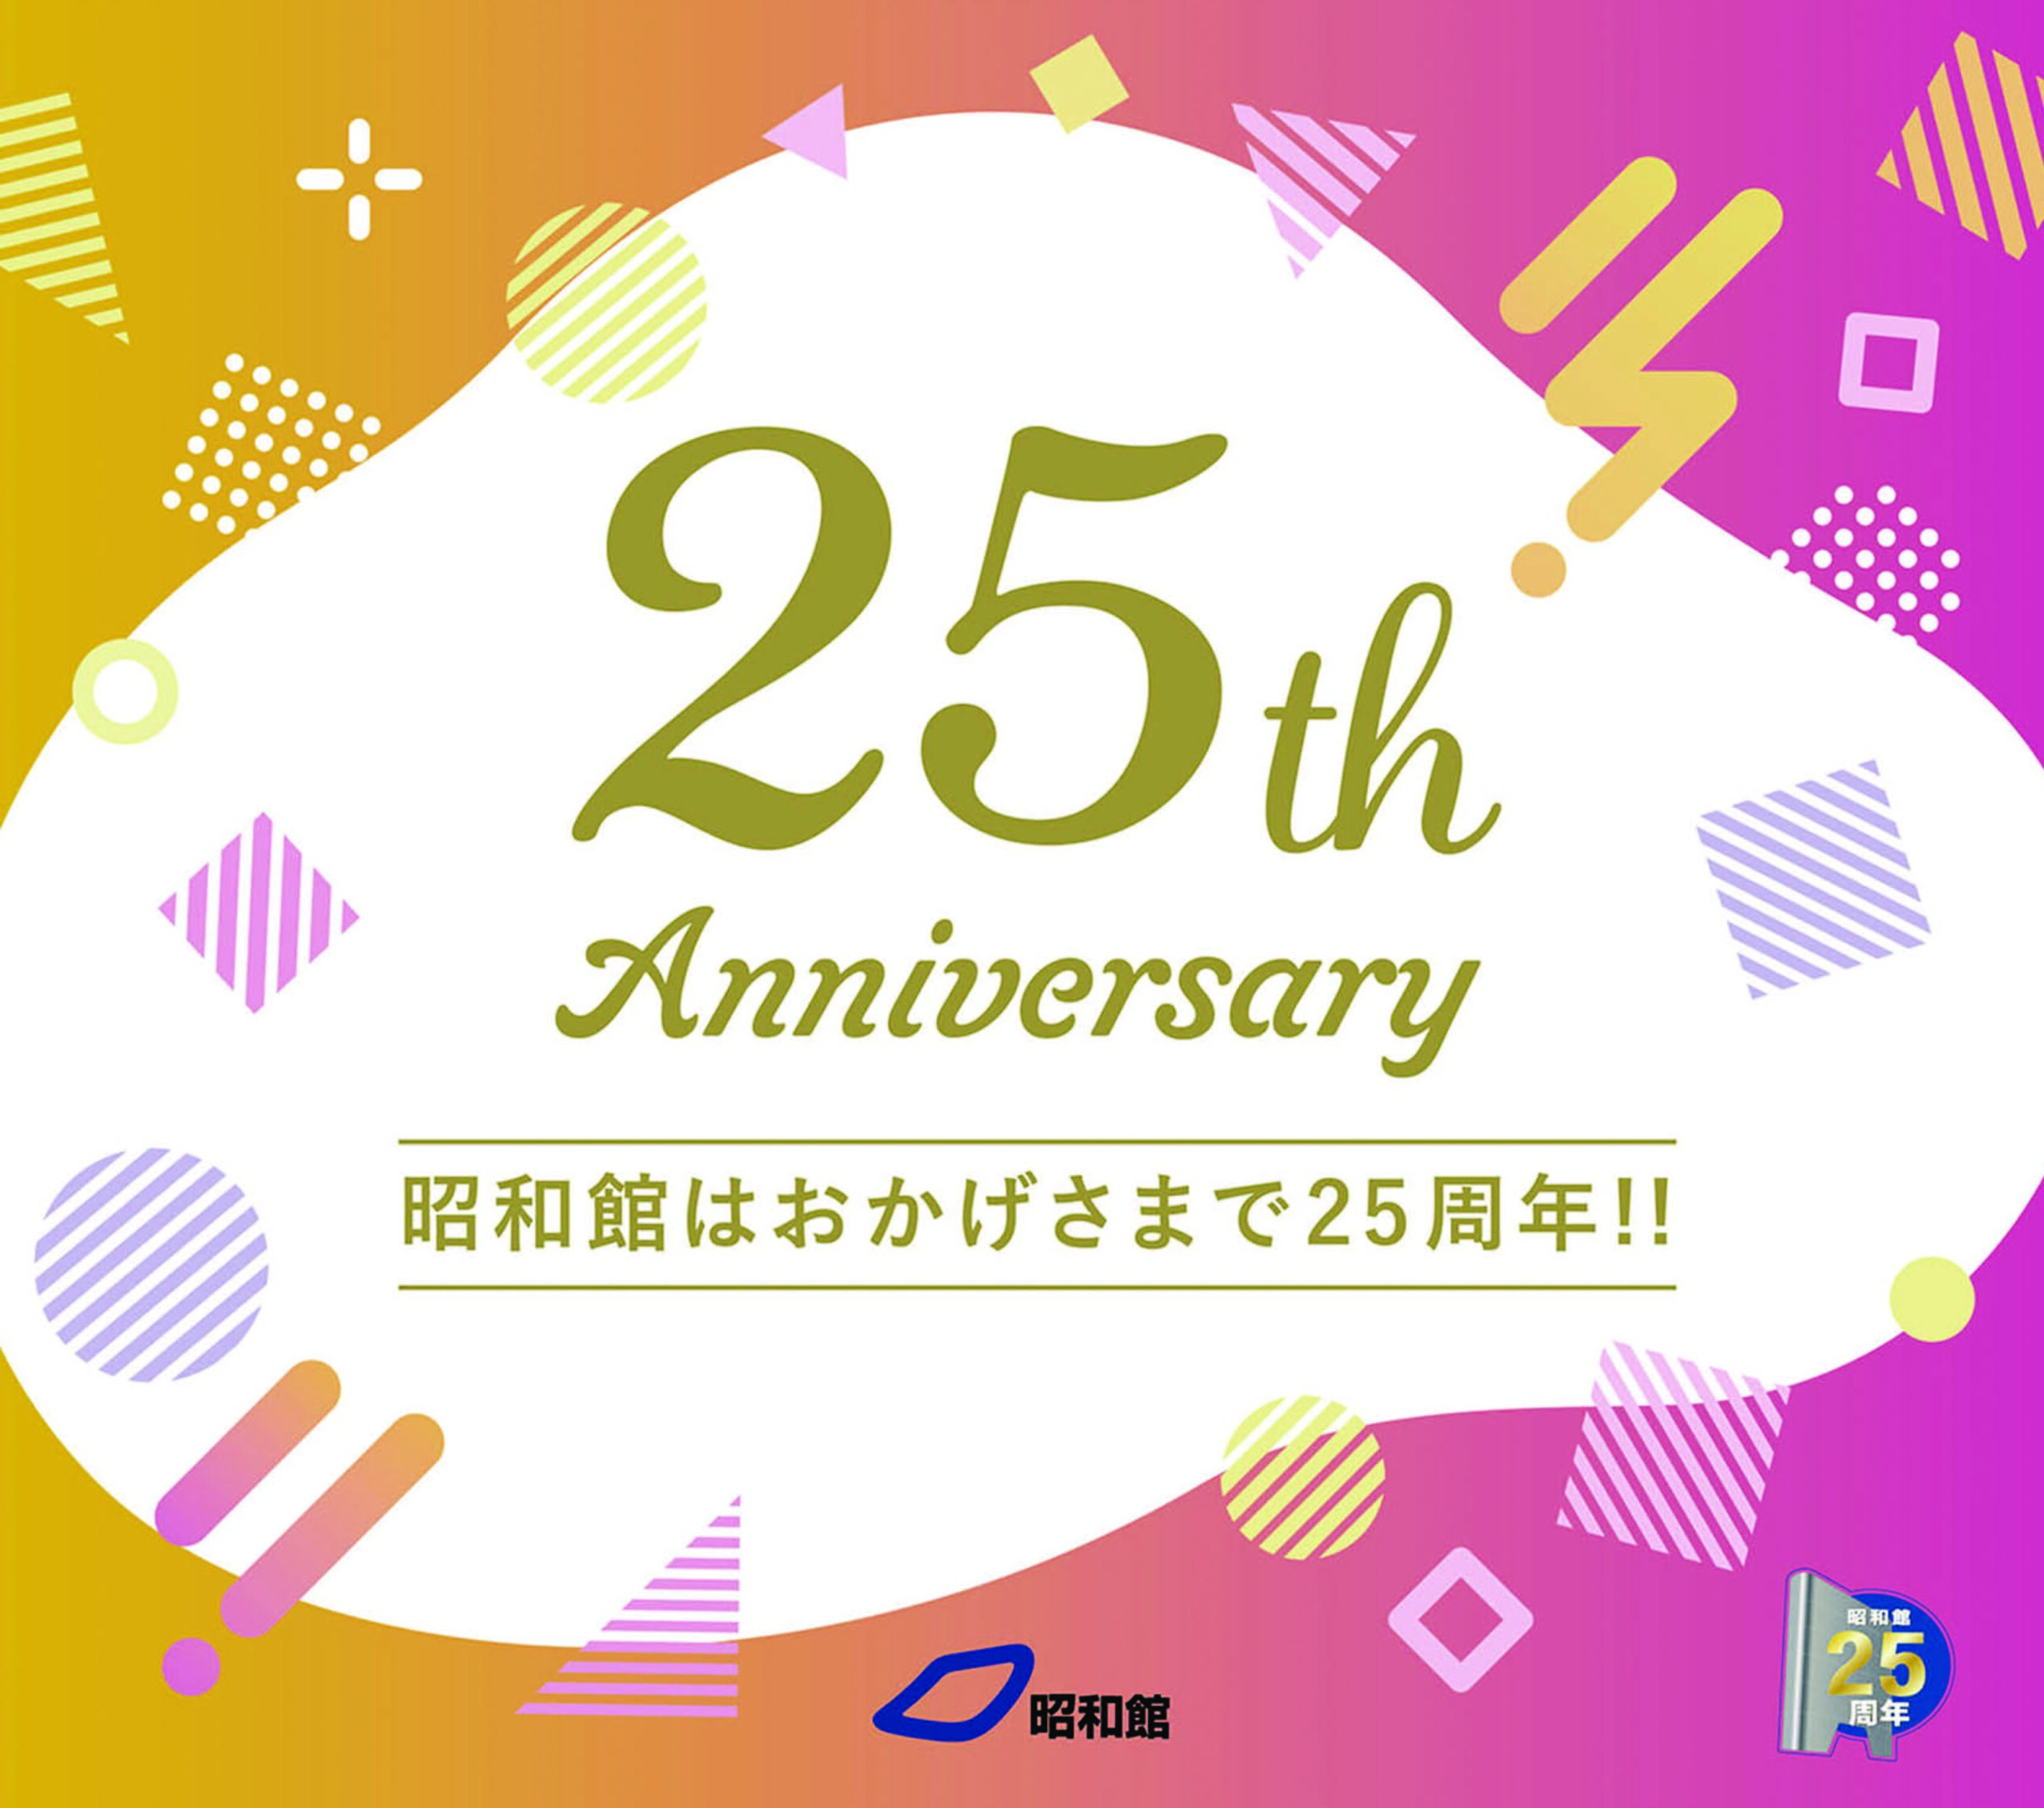 昭和館開館25周年記念イベント